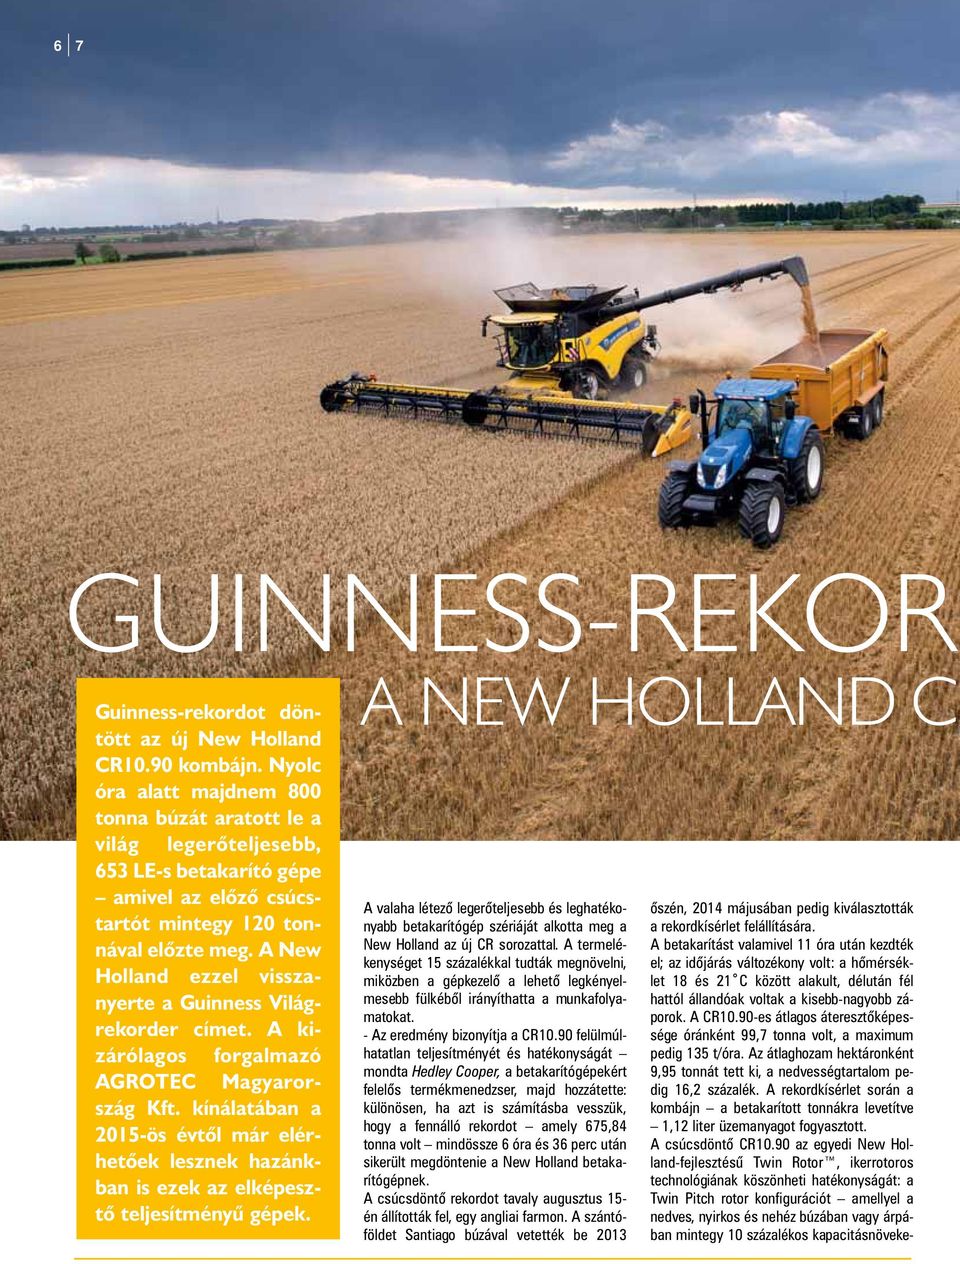 A New Holland ezzel visszanyerte a Guinness Világrekorder címet. A kizárólagos forgalmazó AGROTEC Magyarország Kft.